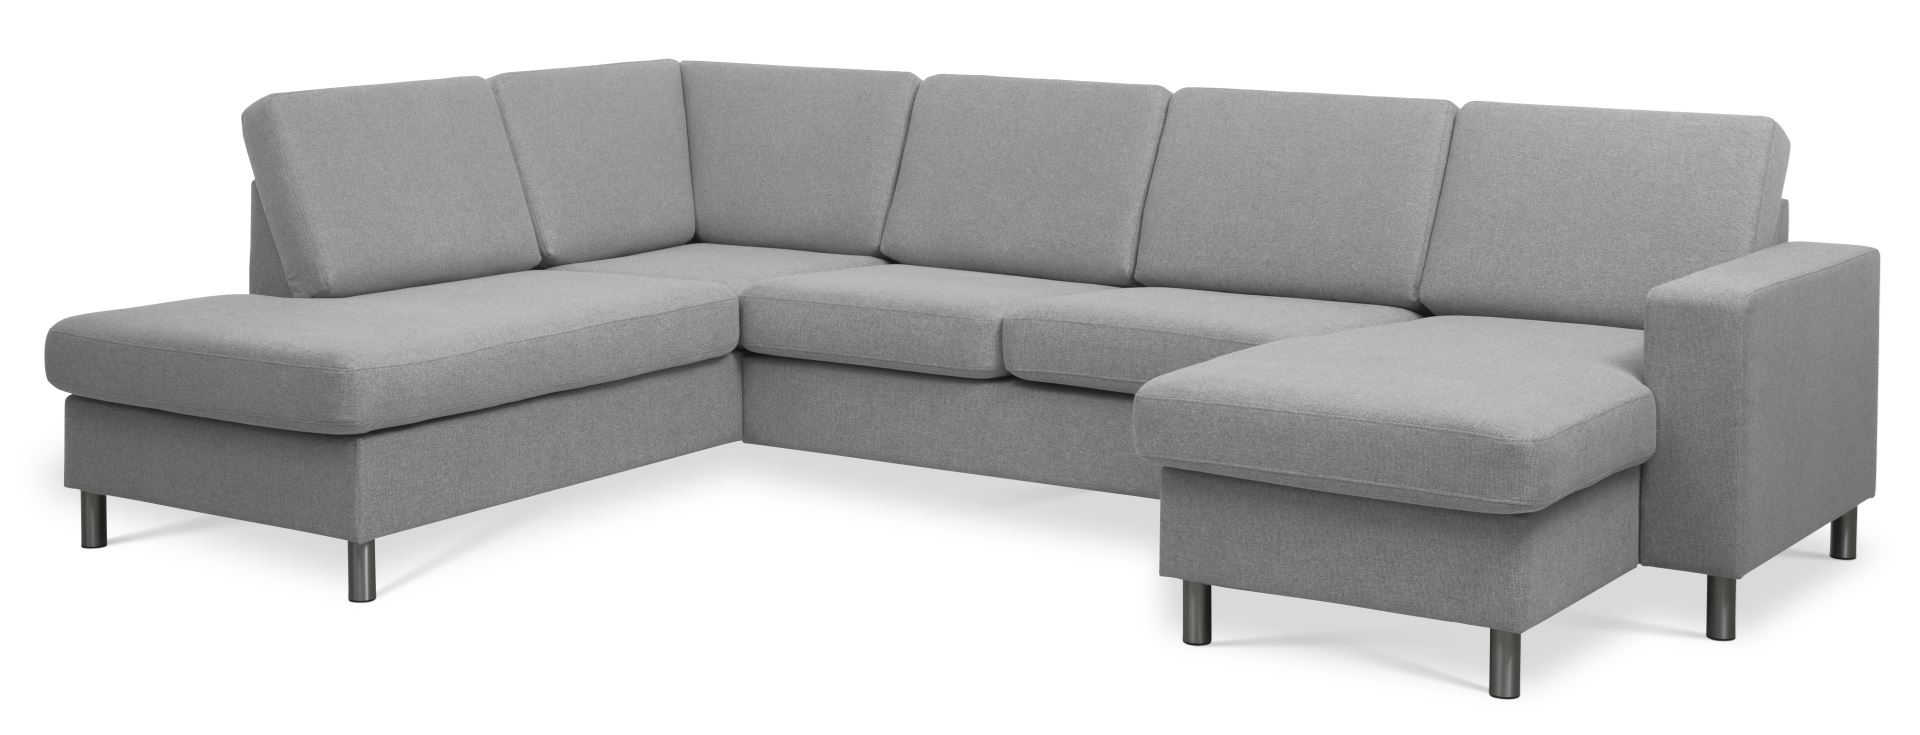 Pan set 4 U OE left sofa med chaiselong - grå polyester stof og børstet aluminium